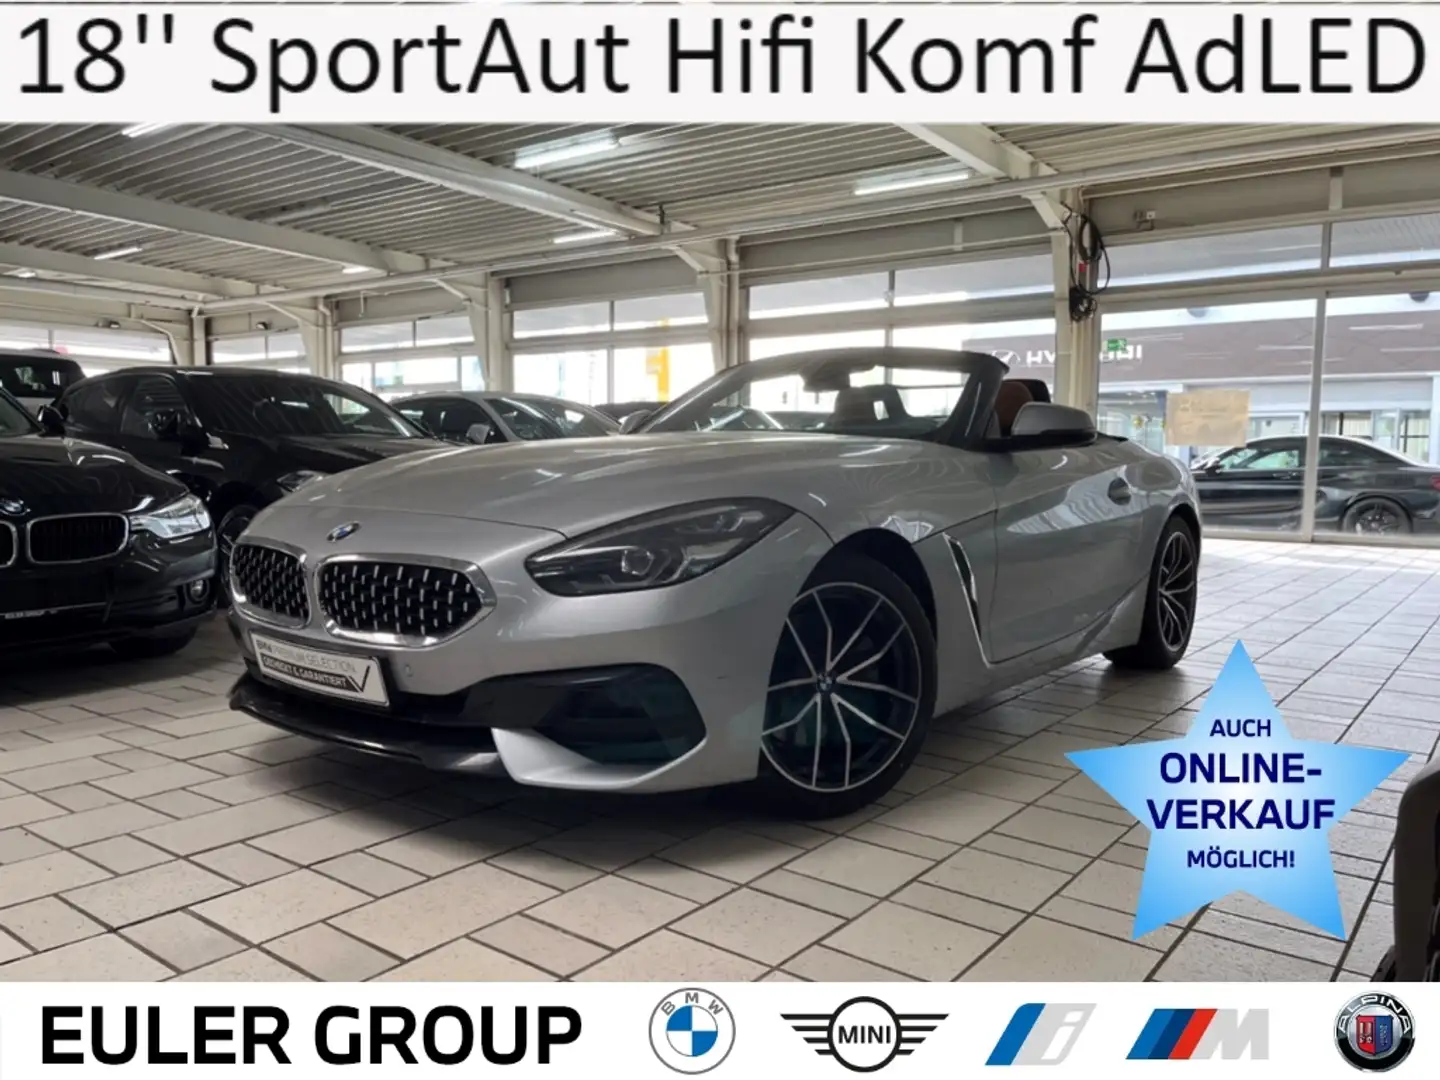 BMW Z4 20i Sport Line 18'' SportAut Hifi Leder Komf AdLED srebrna - 1